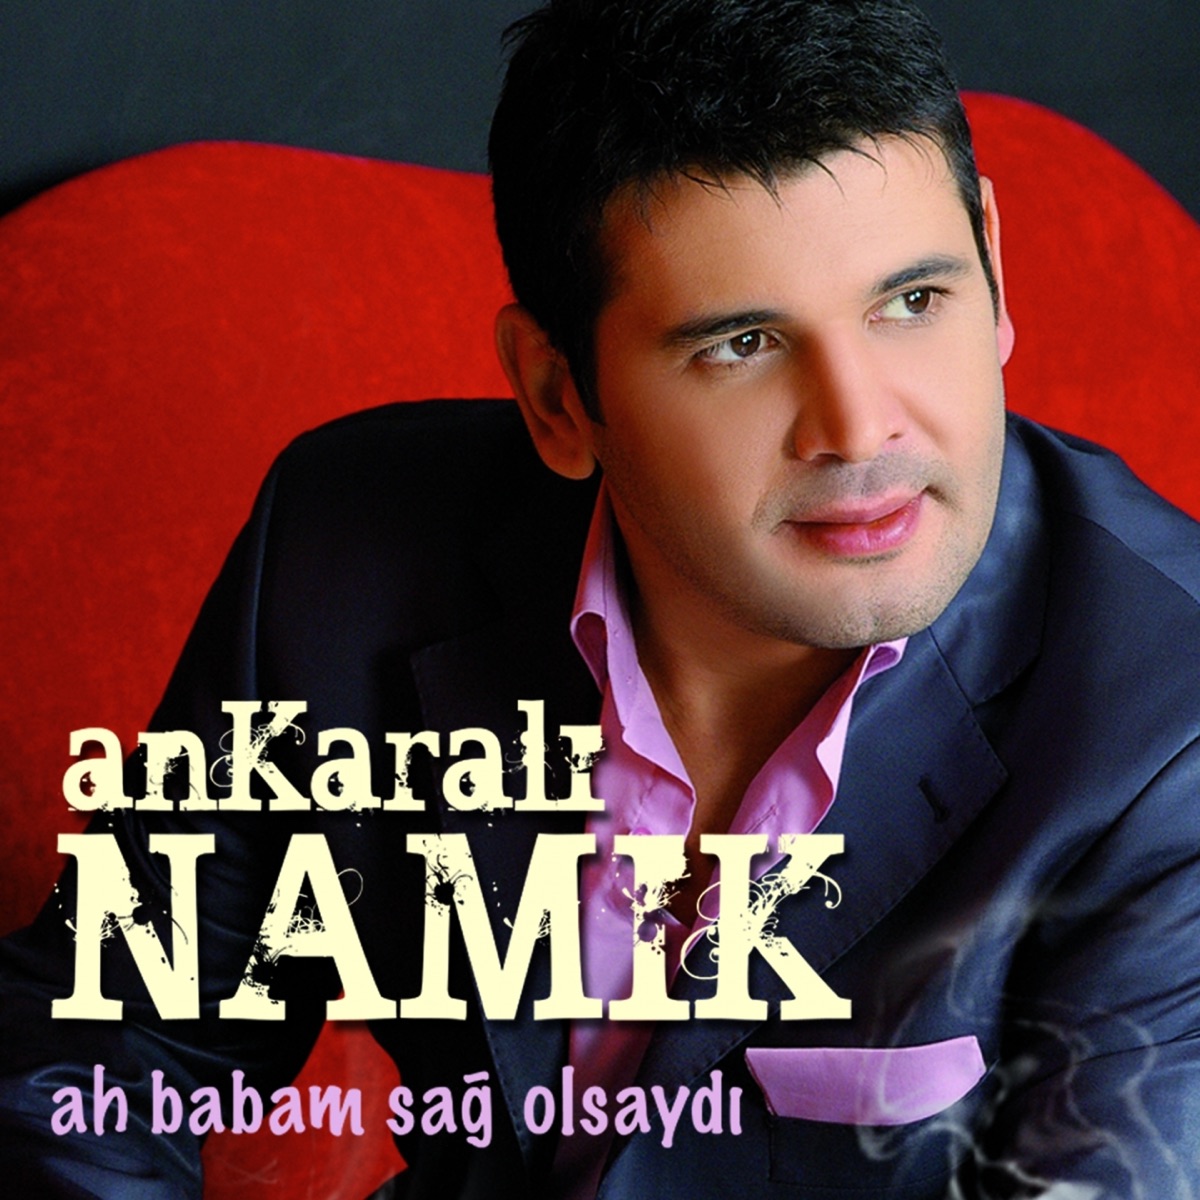 Ah Babam Sağ Olsaydı - Album by Ankaralı Namık - Apple Music